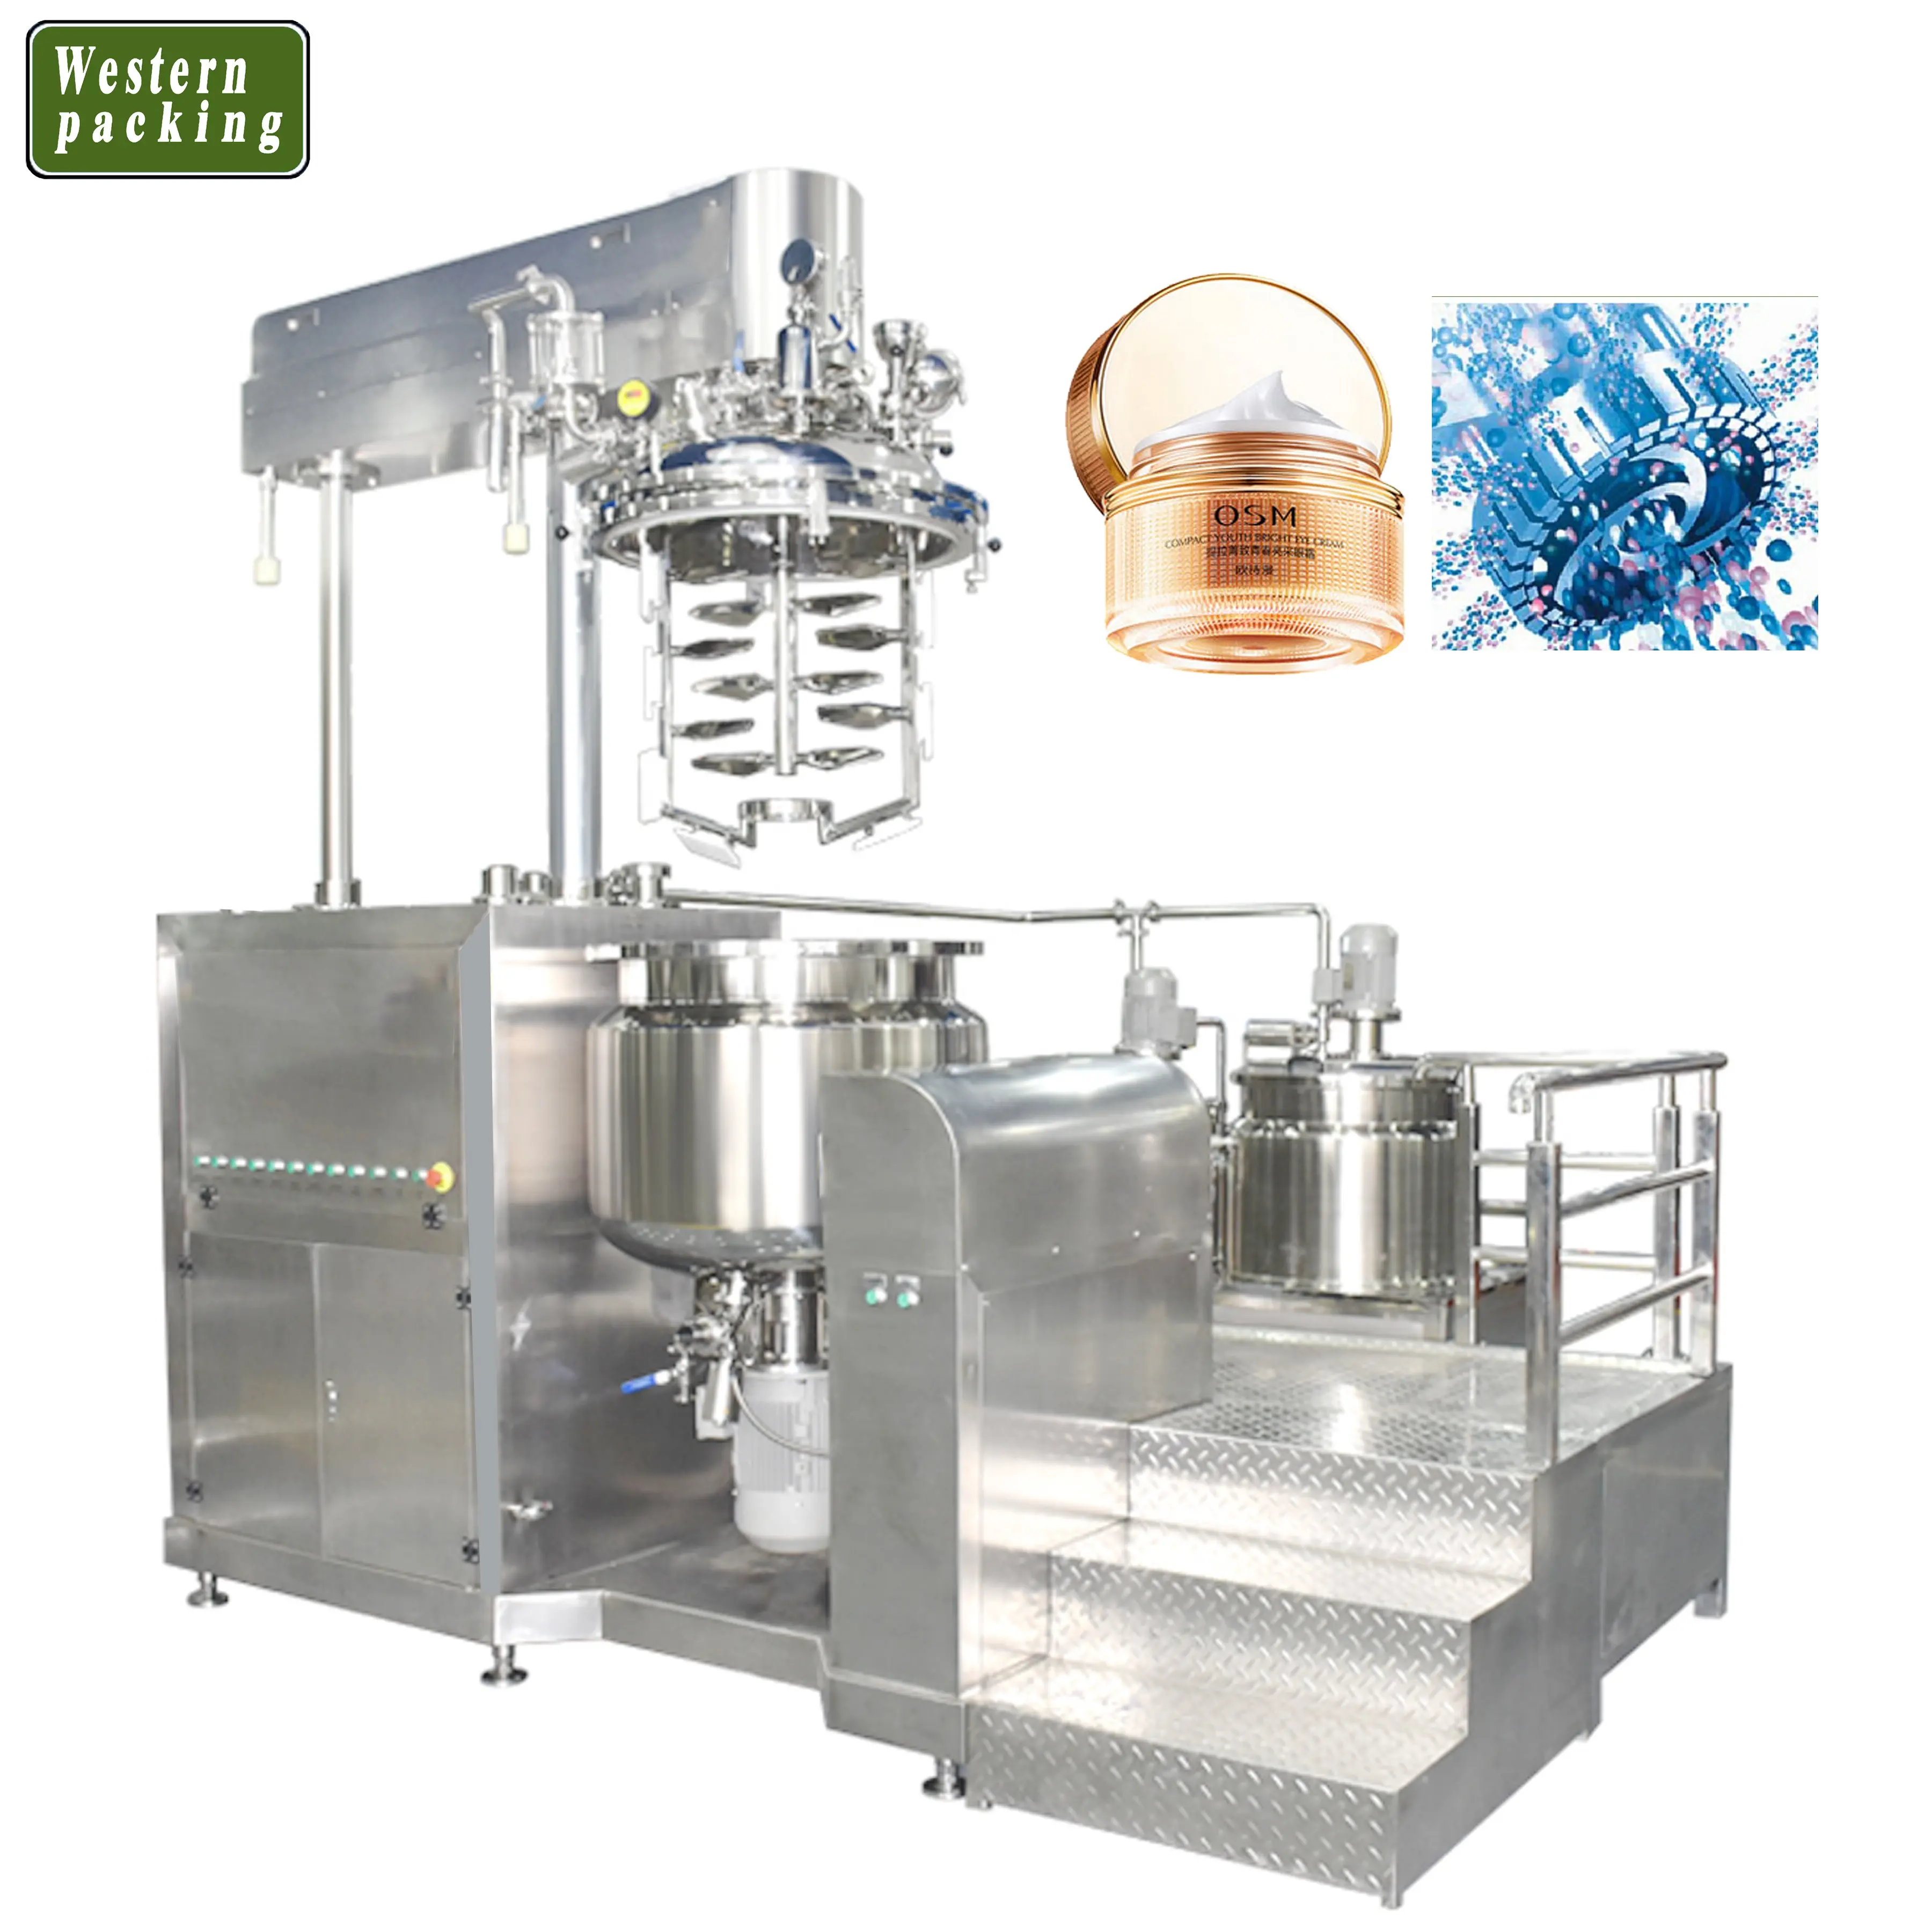 डिटर्जेंट तरल साबुन उत्पादन लाइन/डिटर्जेंट तरल साबुन के लिए 300l मशीन बनाने की मशीन/शैम्पू मिक्सर टैंक